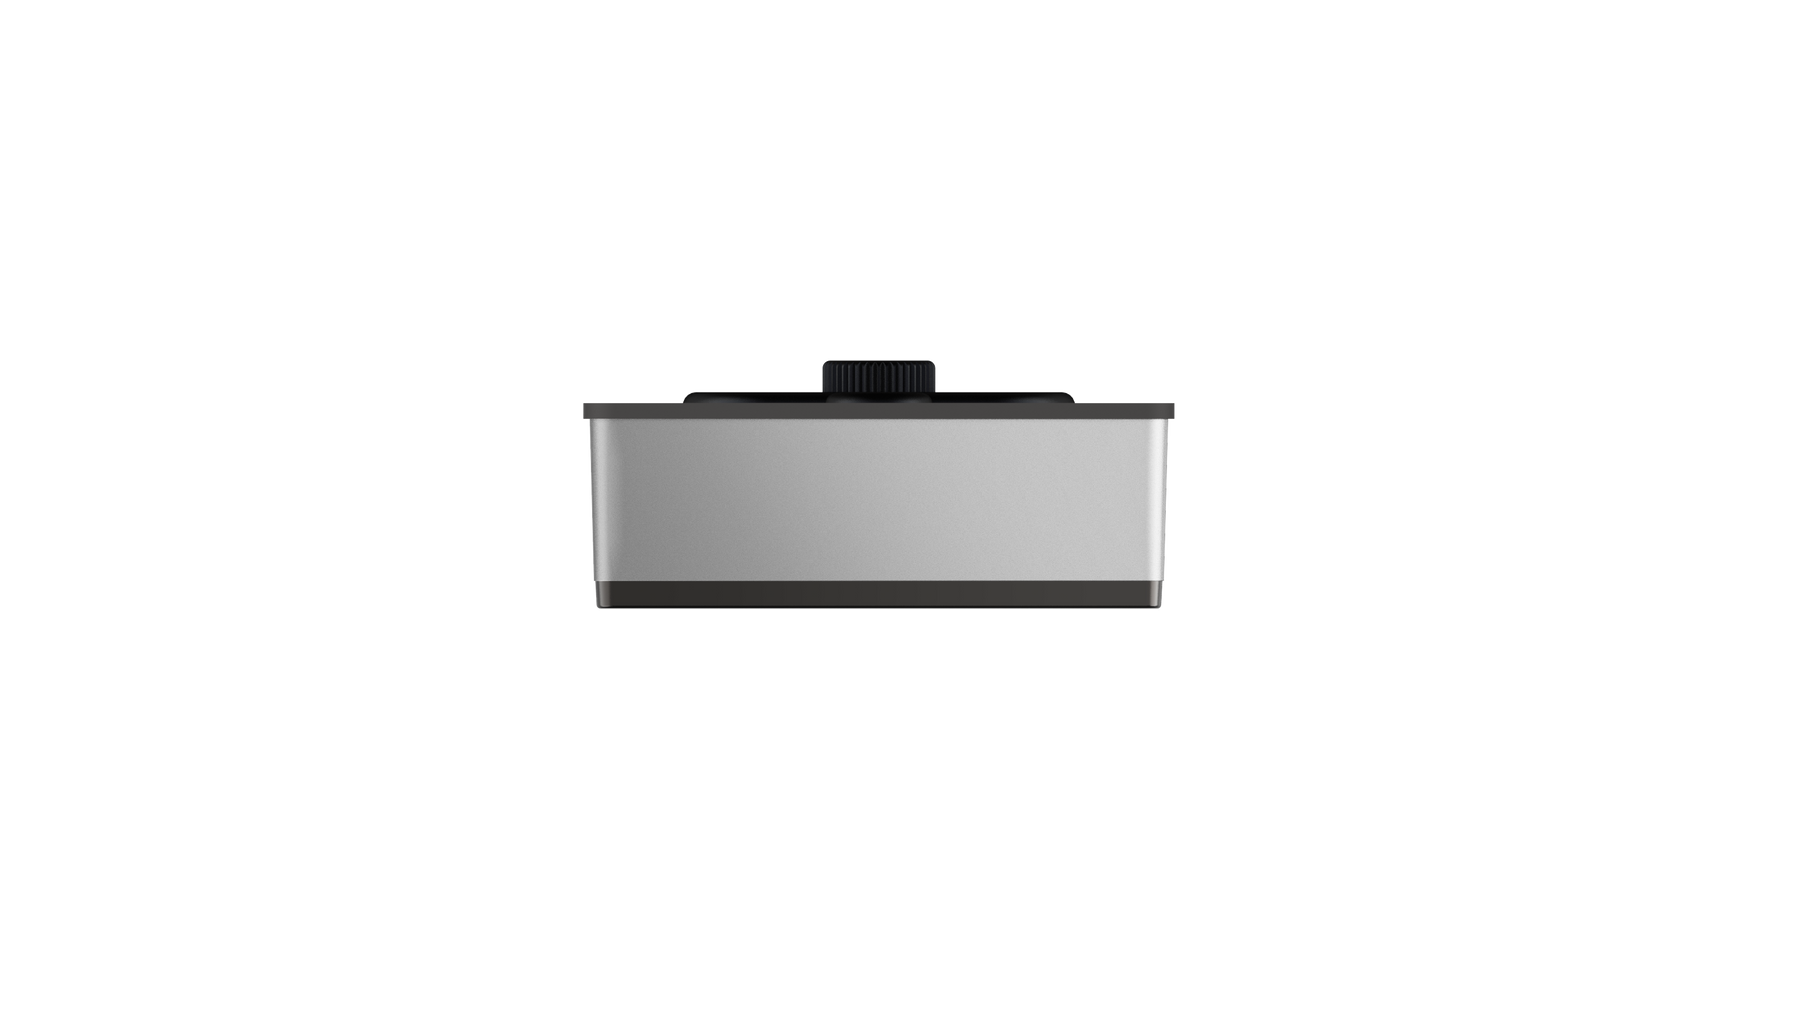 Aqara Smart Lock U100 with E1 Hub Kit Silver (Deadbolt Lock/Easy Installation, Multiple unlock method, IP65 Rating, Support Apple Wallet/HomeKit)